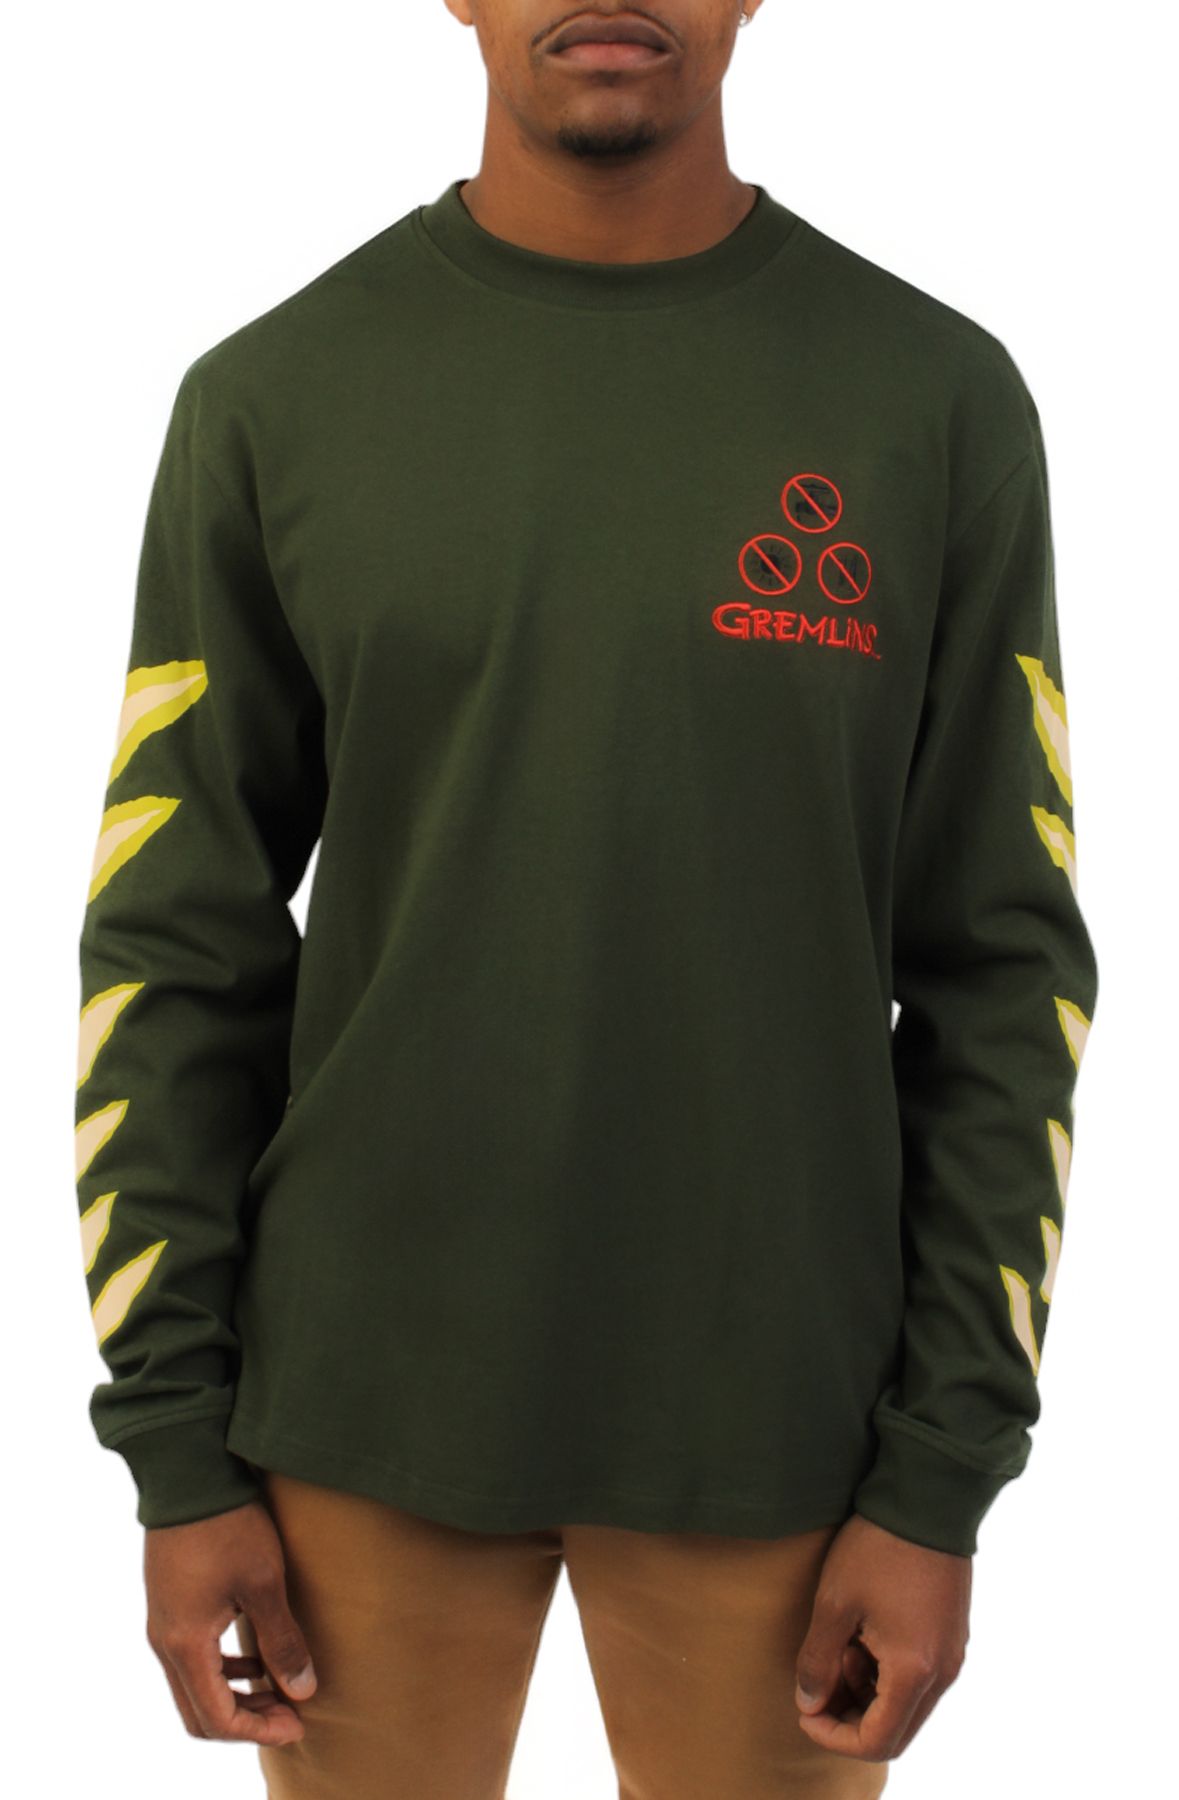 PUMA Gremlins Long Sleeve T-Shirt 62535701 - Shiekh